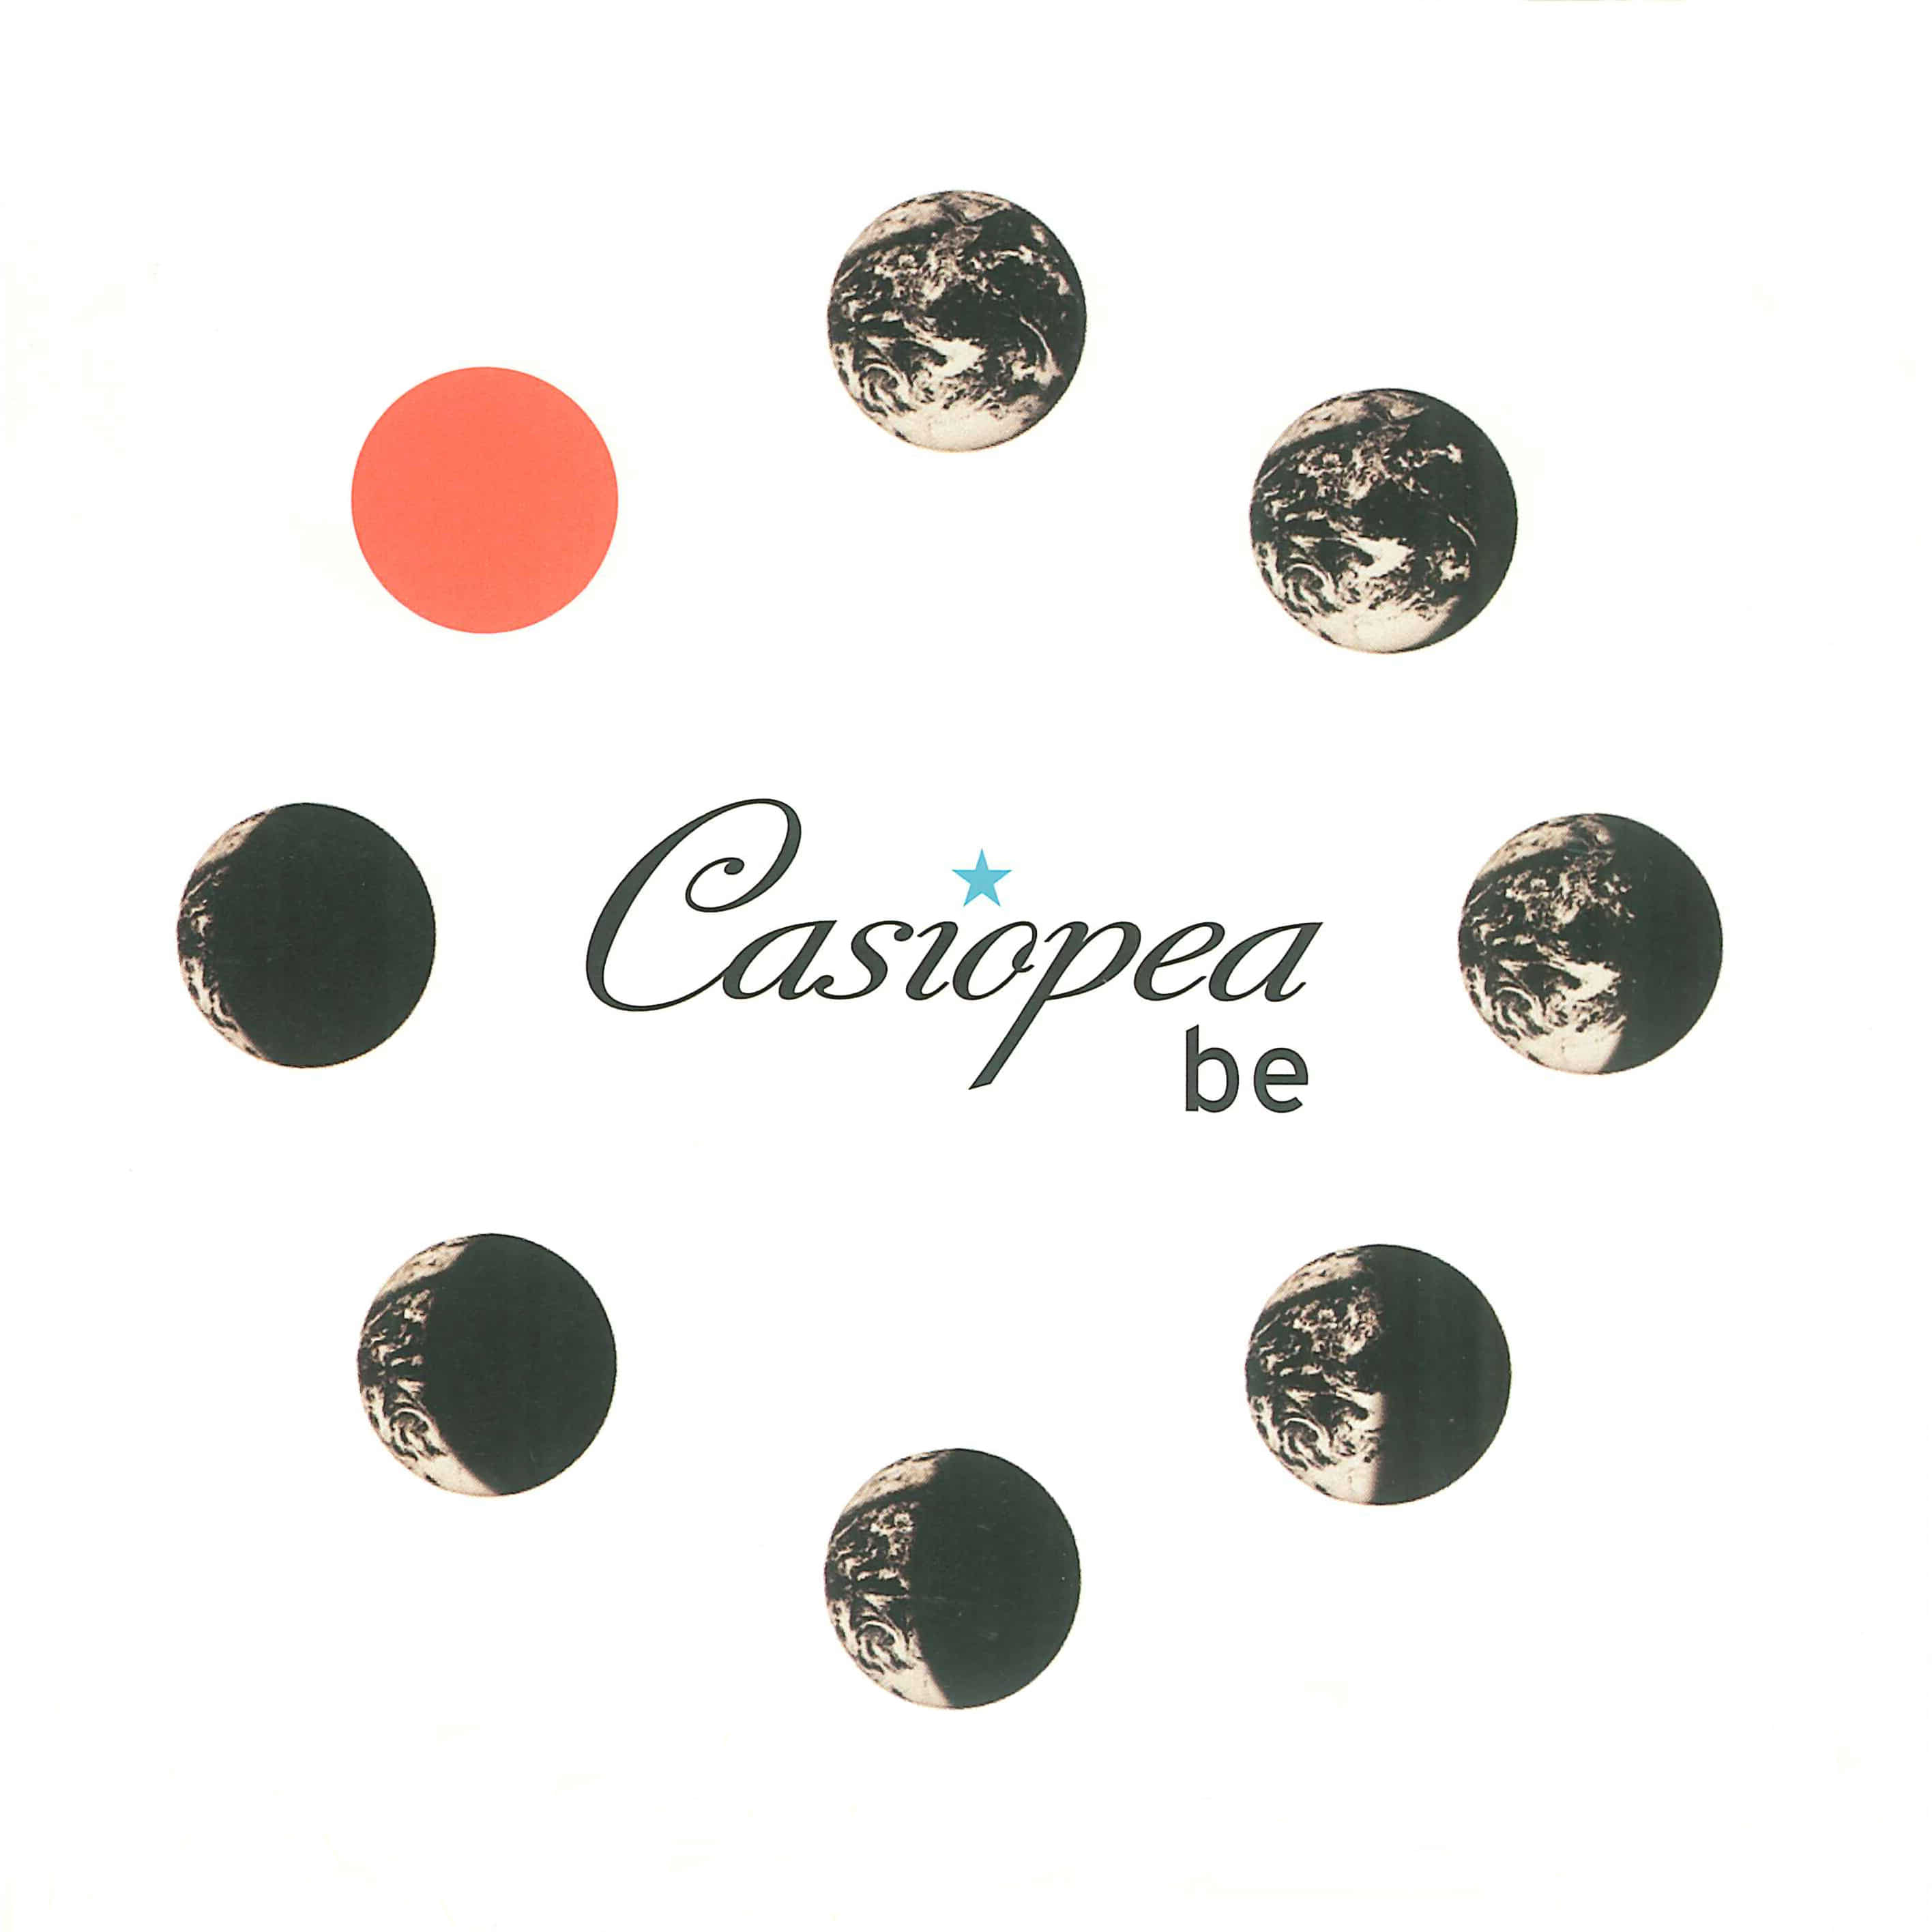 Casiopea-DREAM MAKER